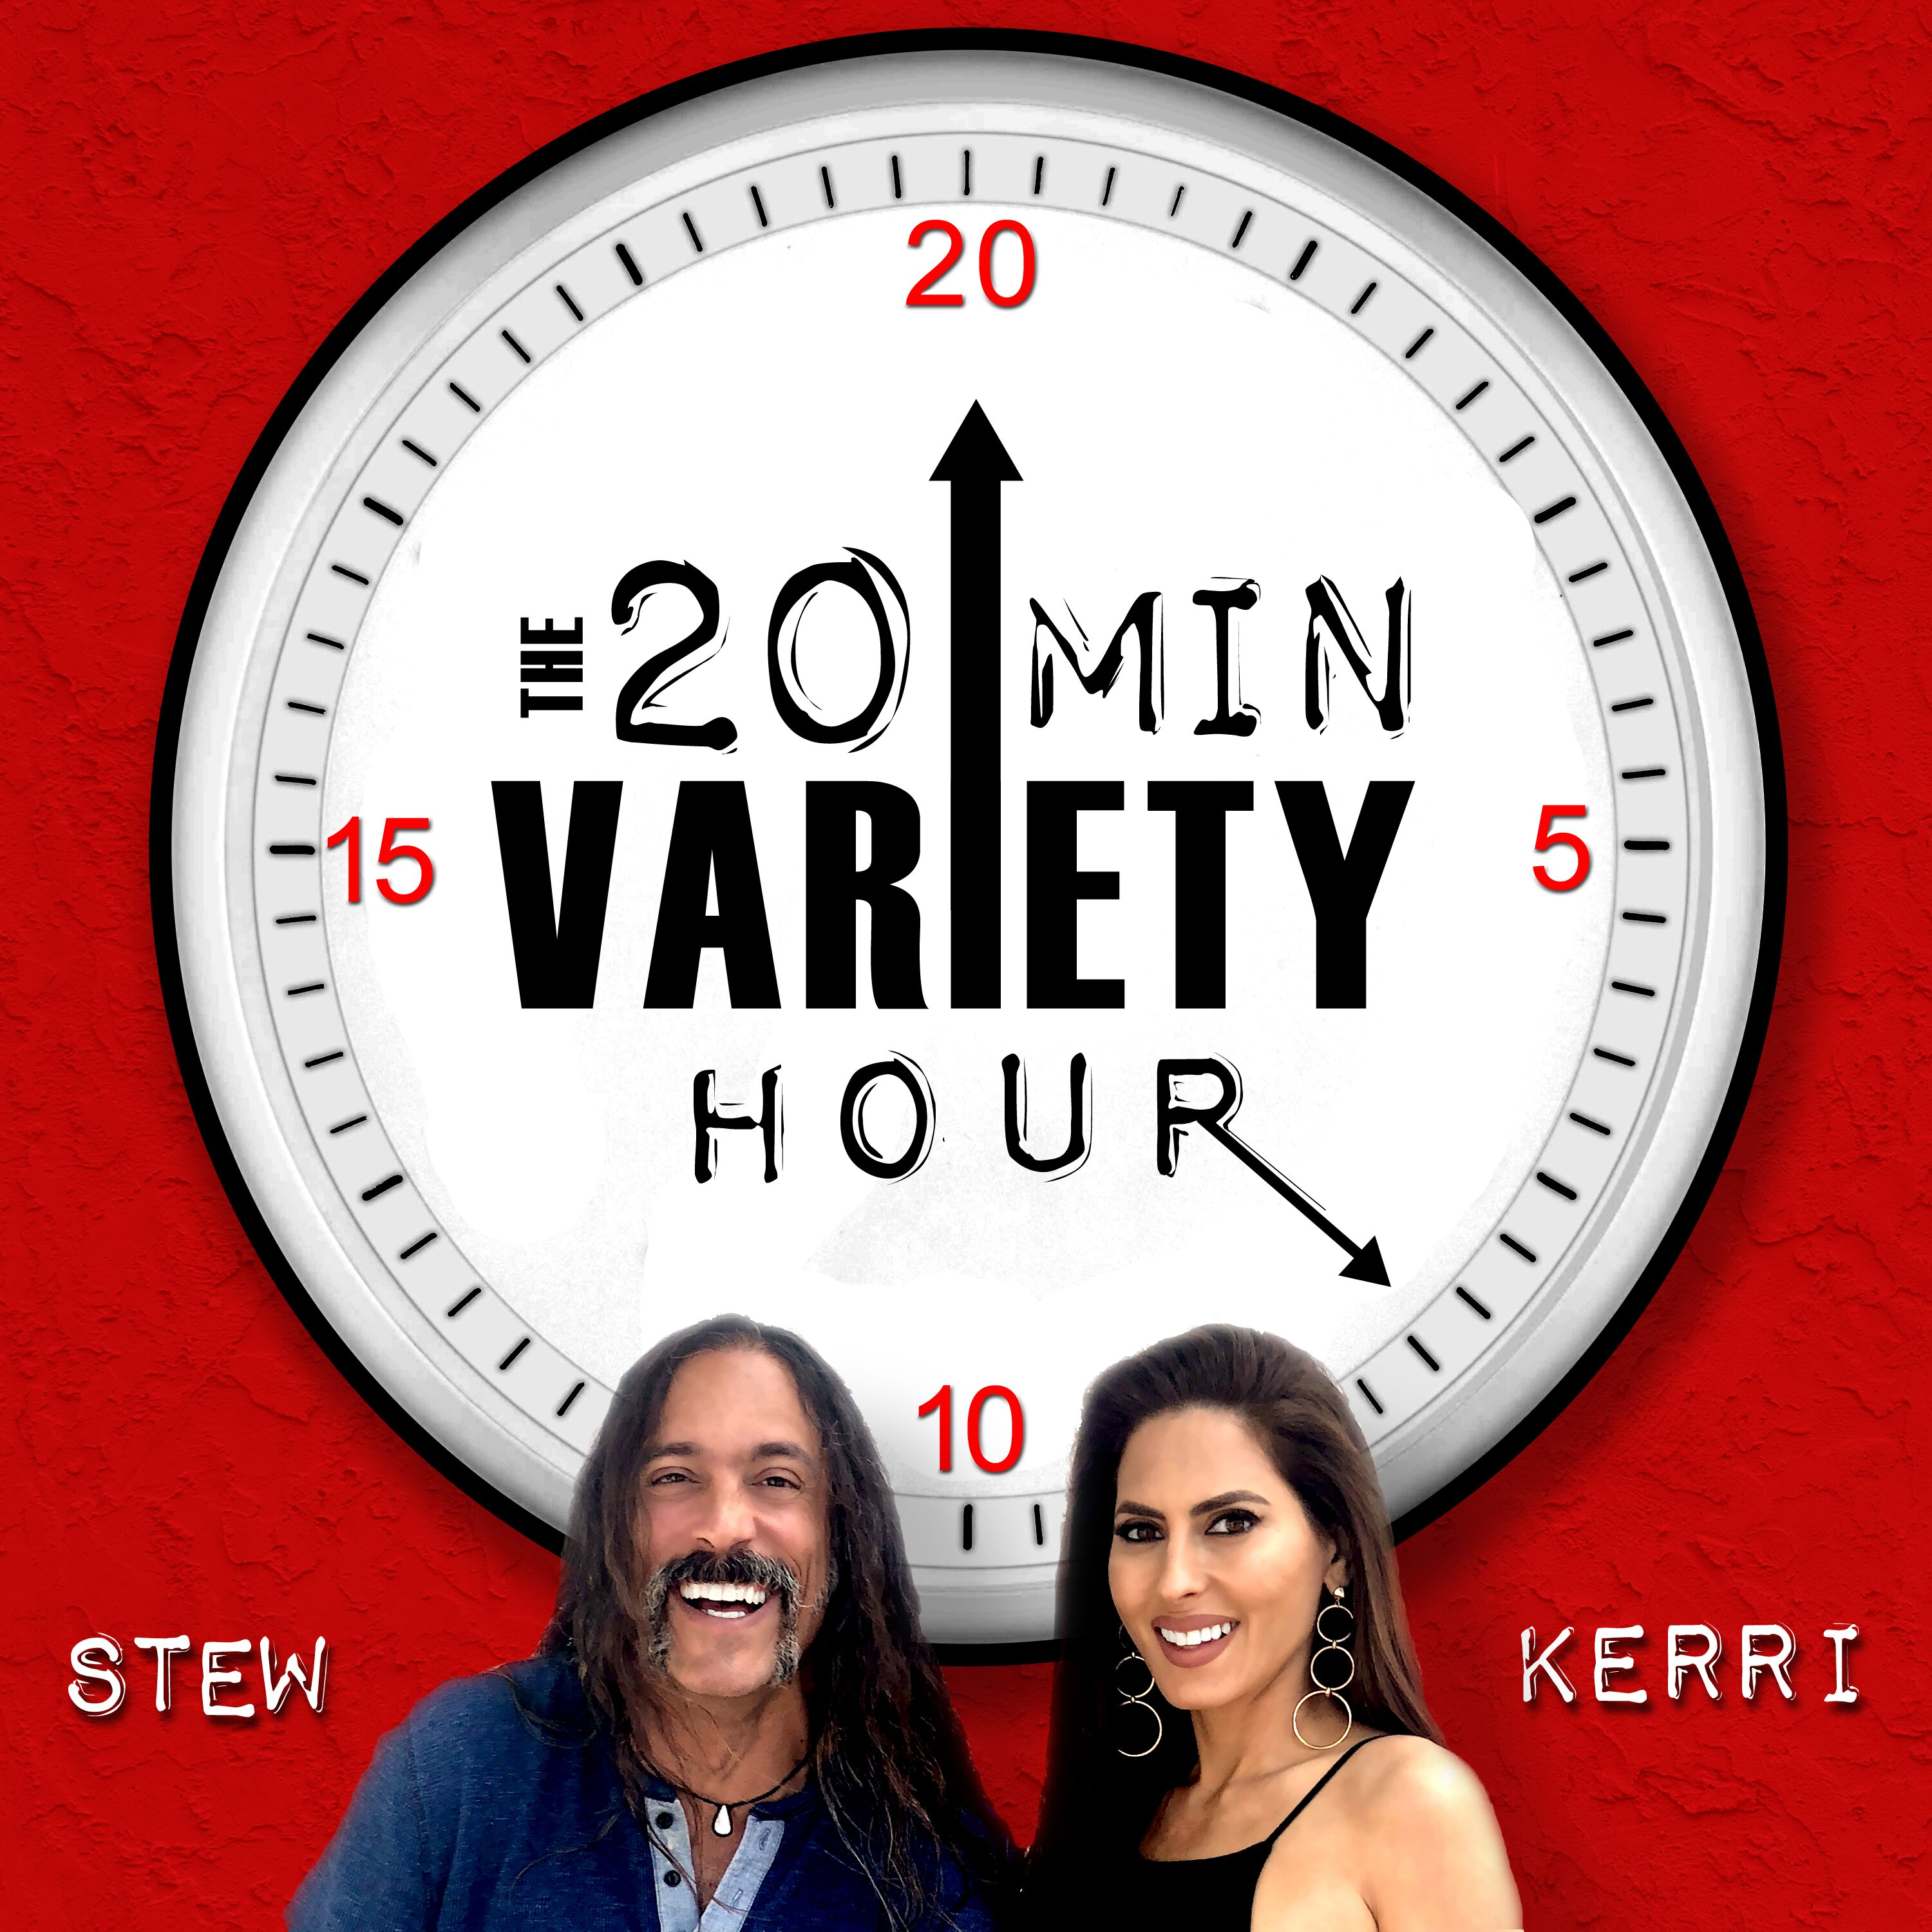 20 Min Variety Hour: Episode 3